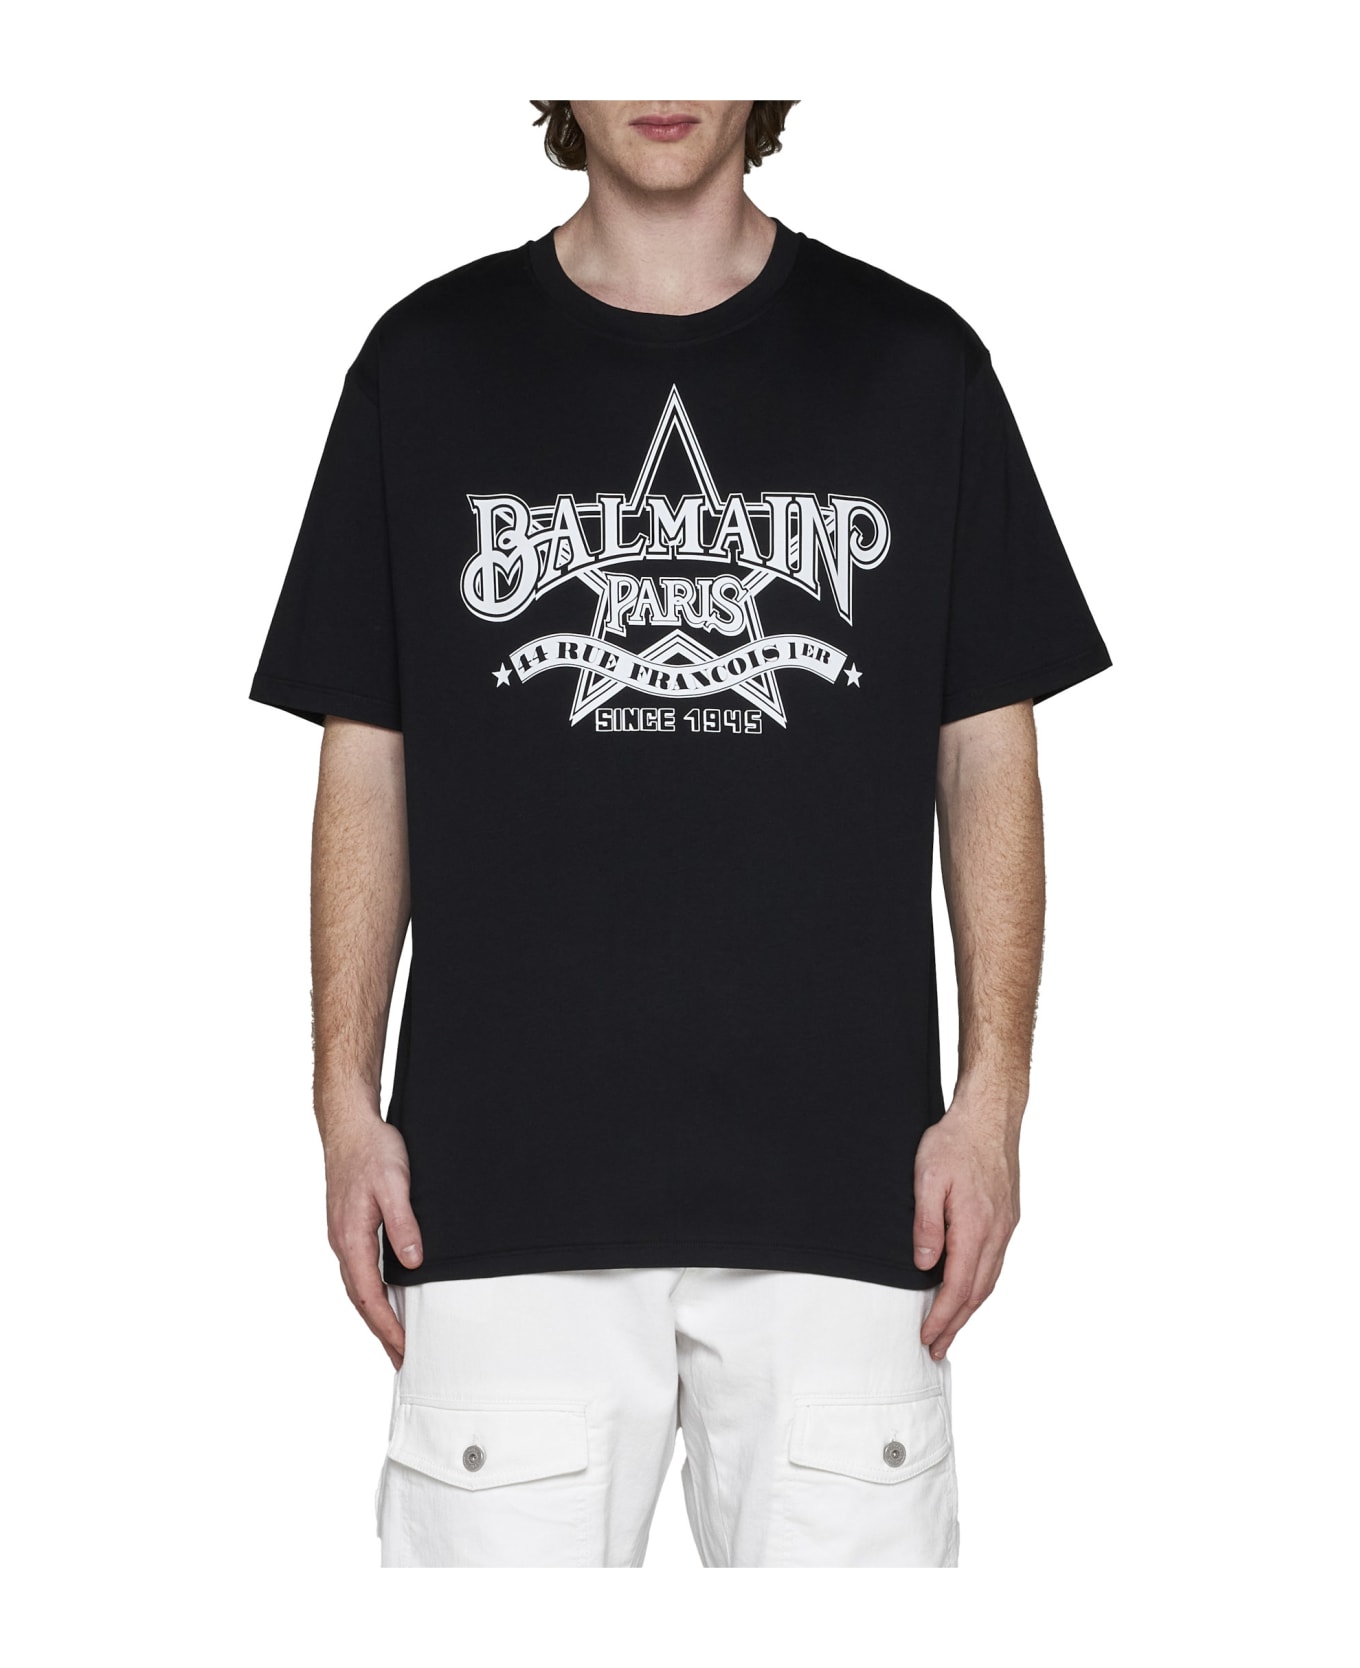 Balmain Star T-shirt - Eab Noir/blanc